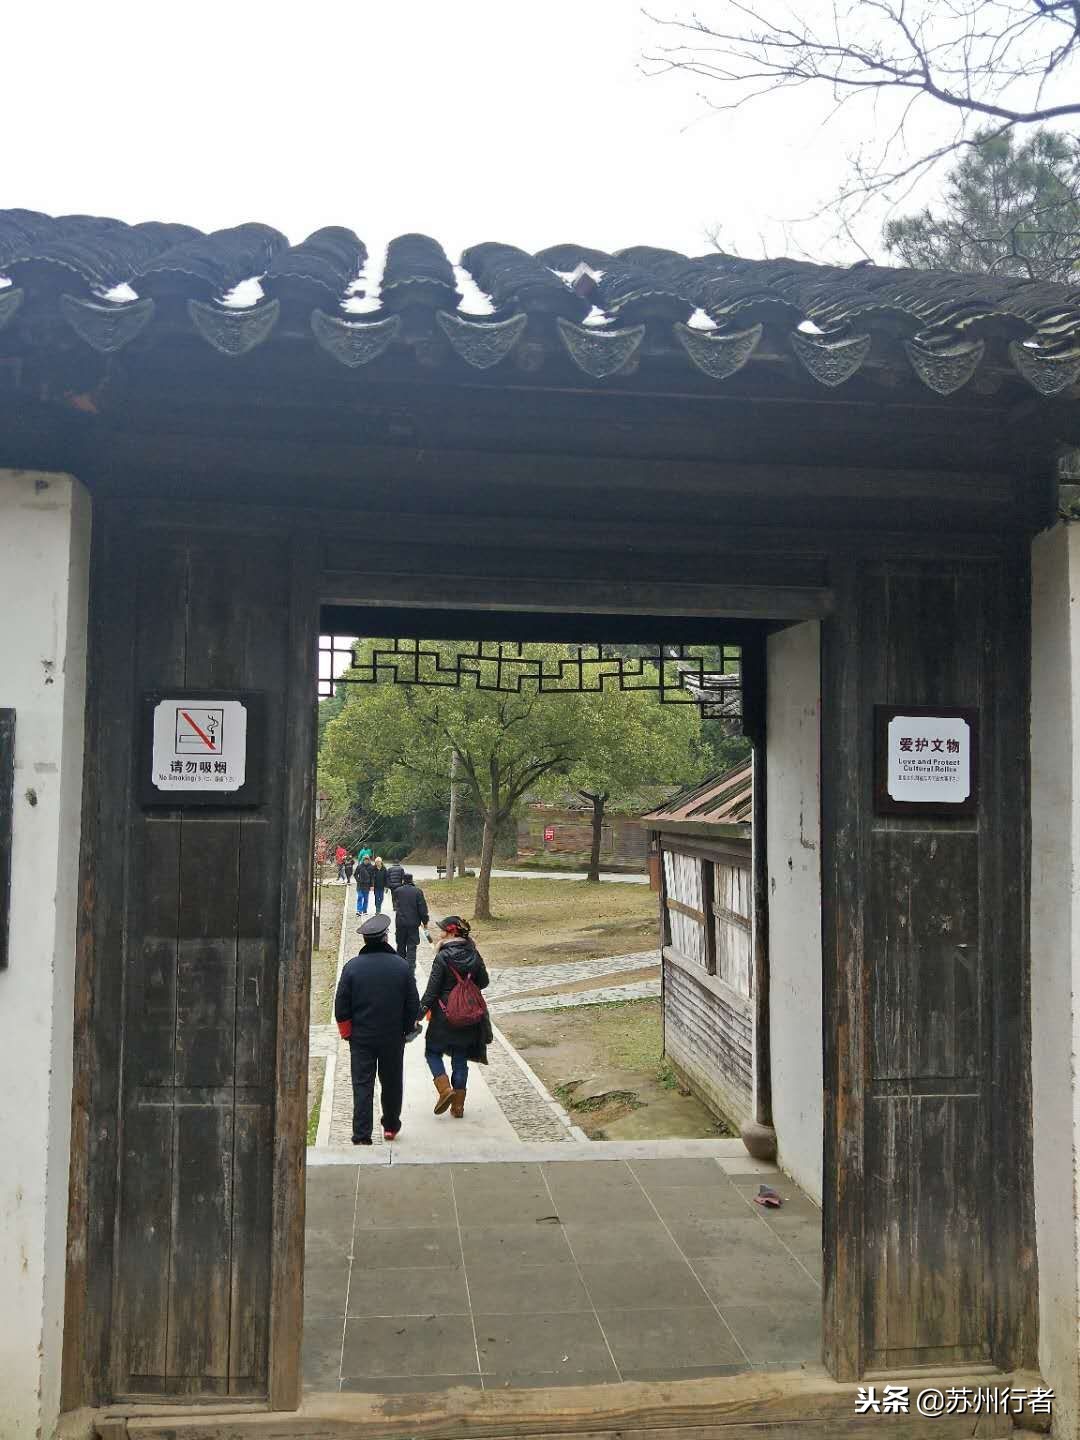 跨年登山，我选择去有1600多年历史的苏州灵岩山寺